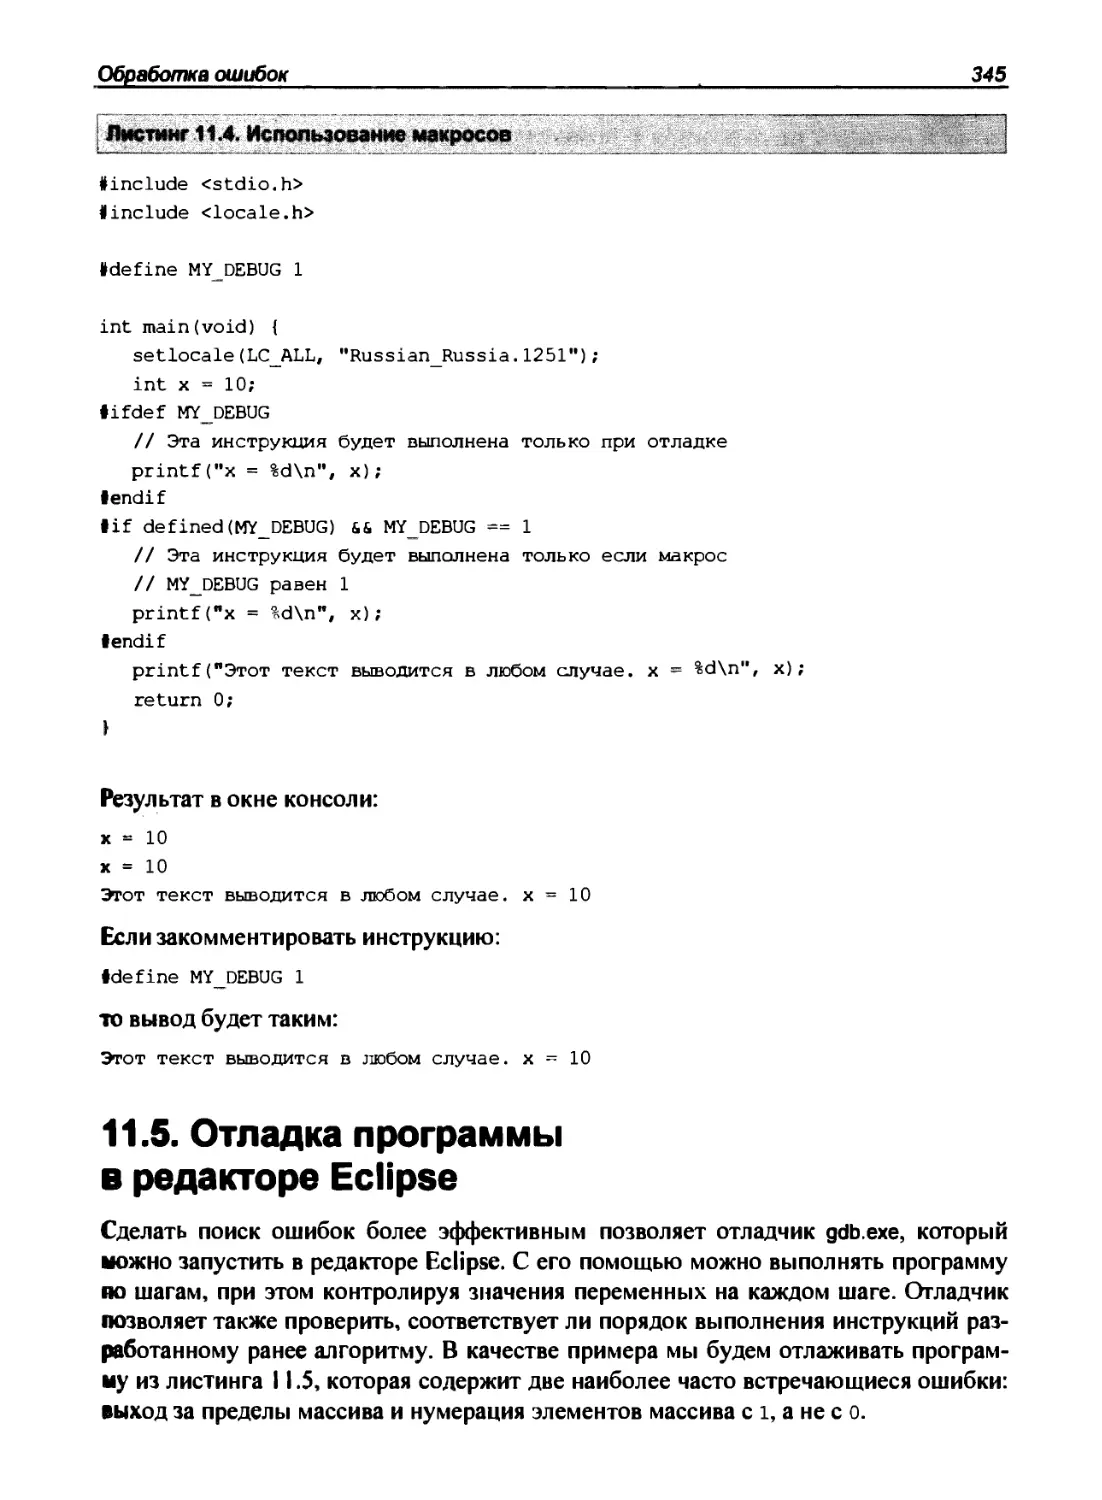 11.5. Отладка программы в редакторе Eclipse